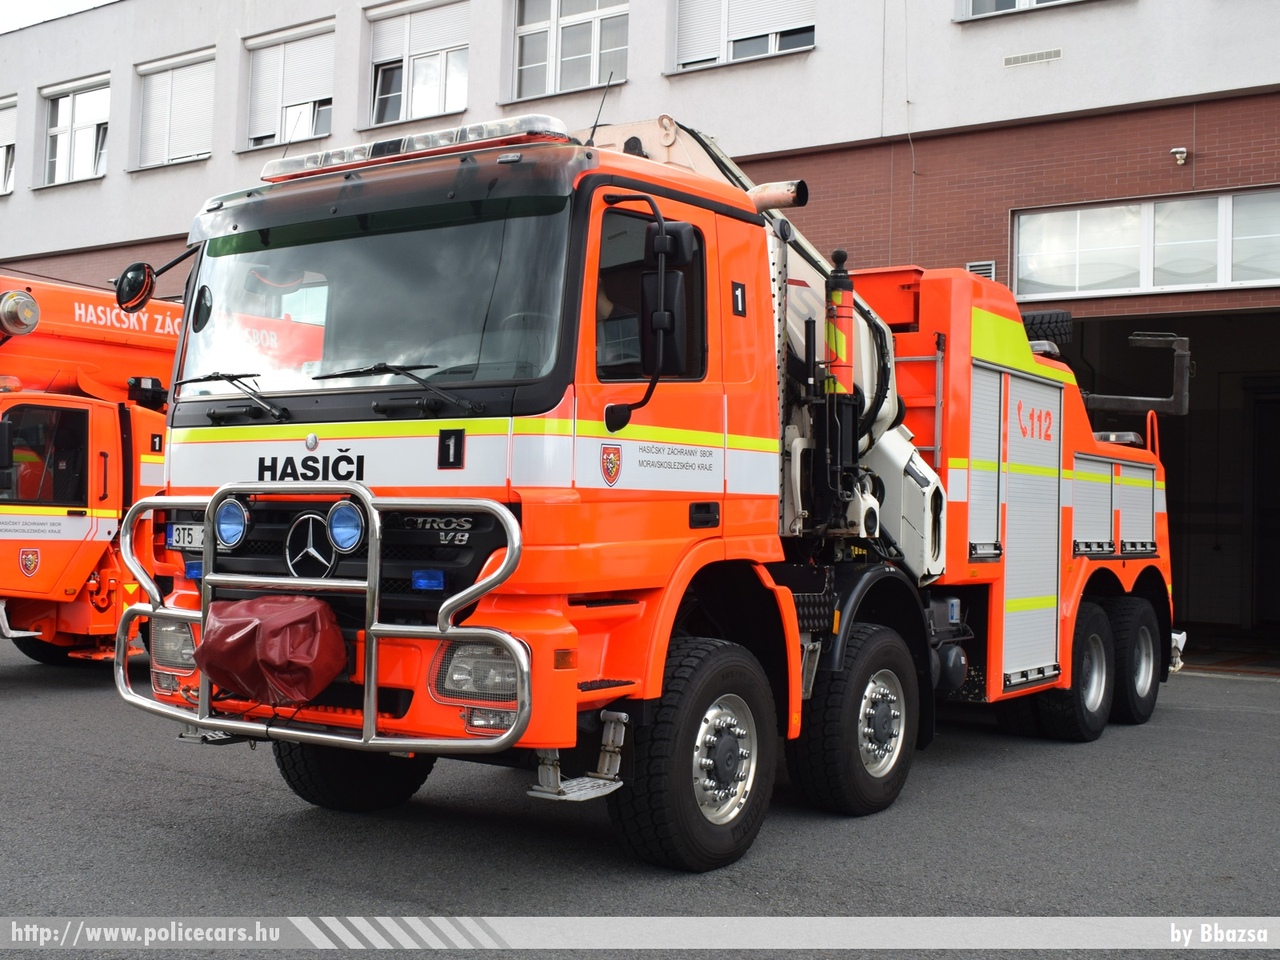 Mercedes- Benz Actros V8, Ostrava, fotó: Bbazsa
Keywords: Czech cseh Csehország tûzoltó tûzoltóautó fire firetruck